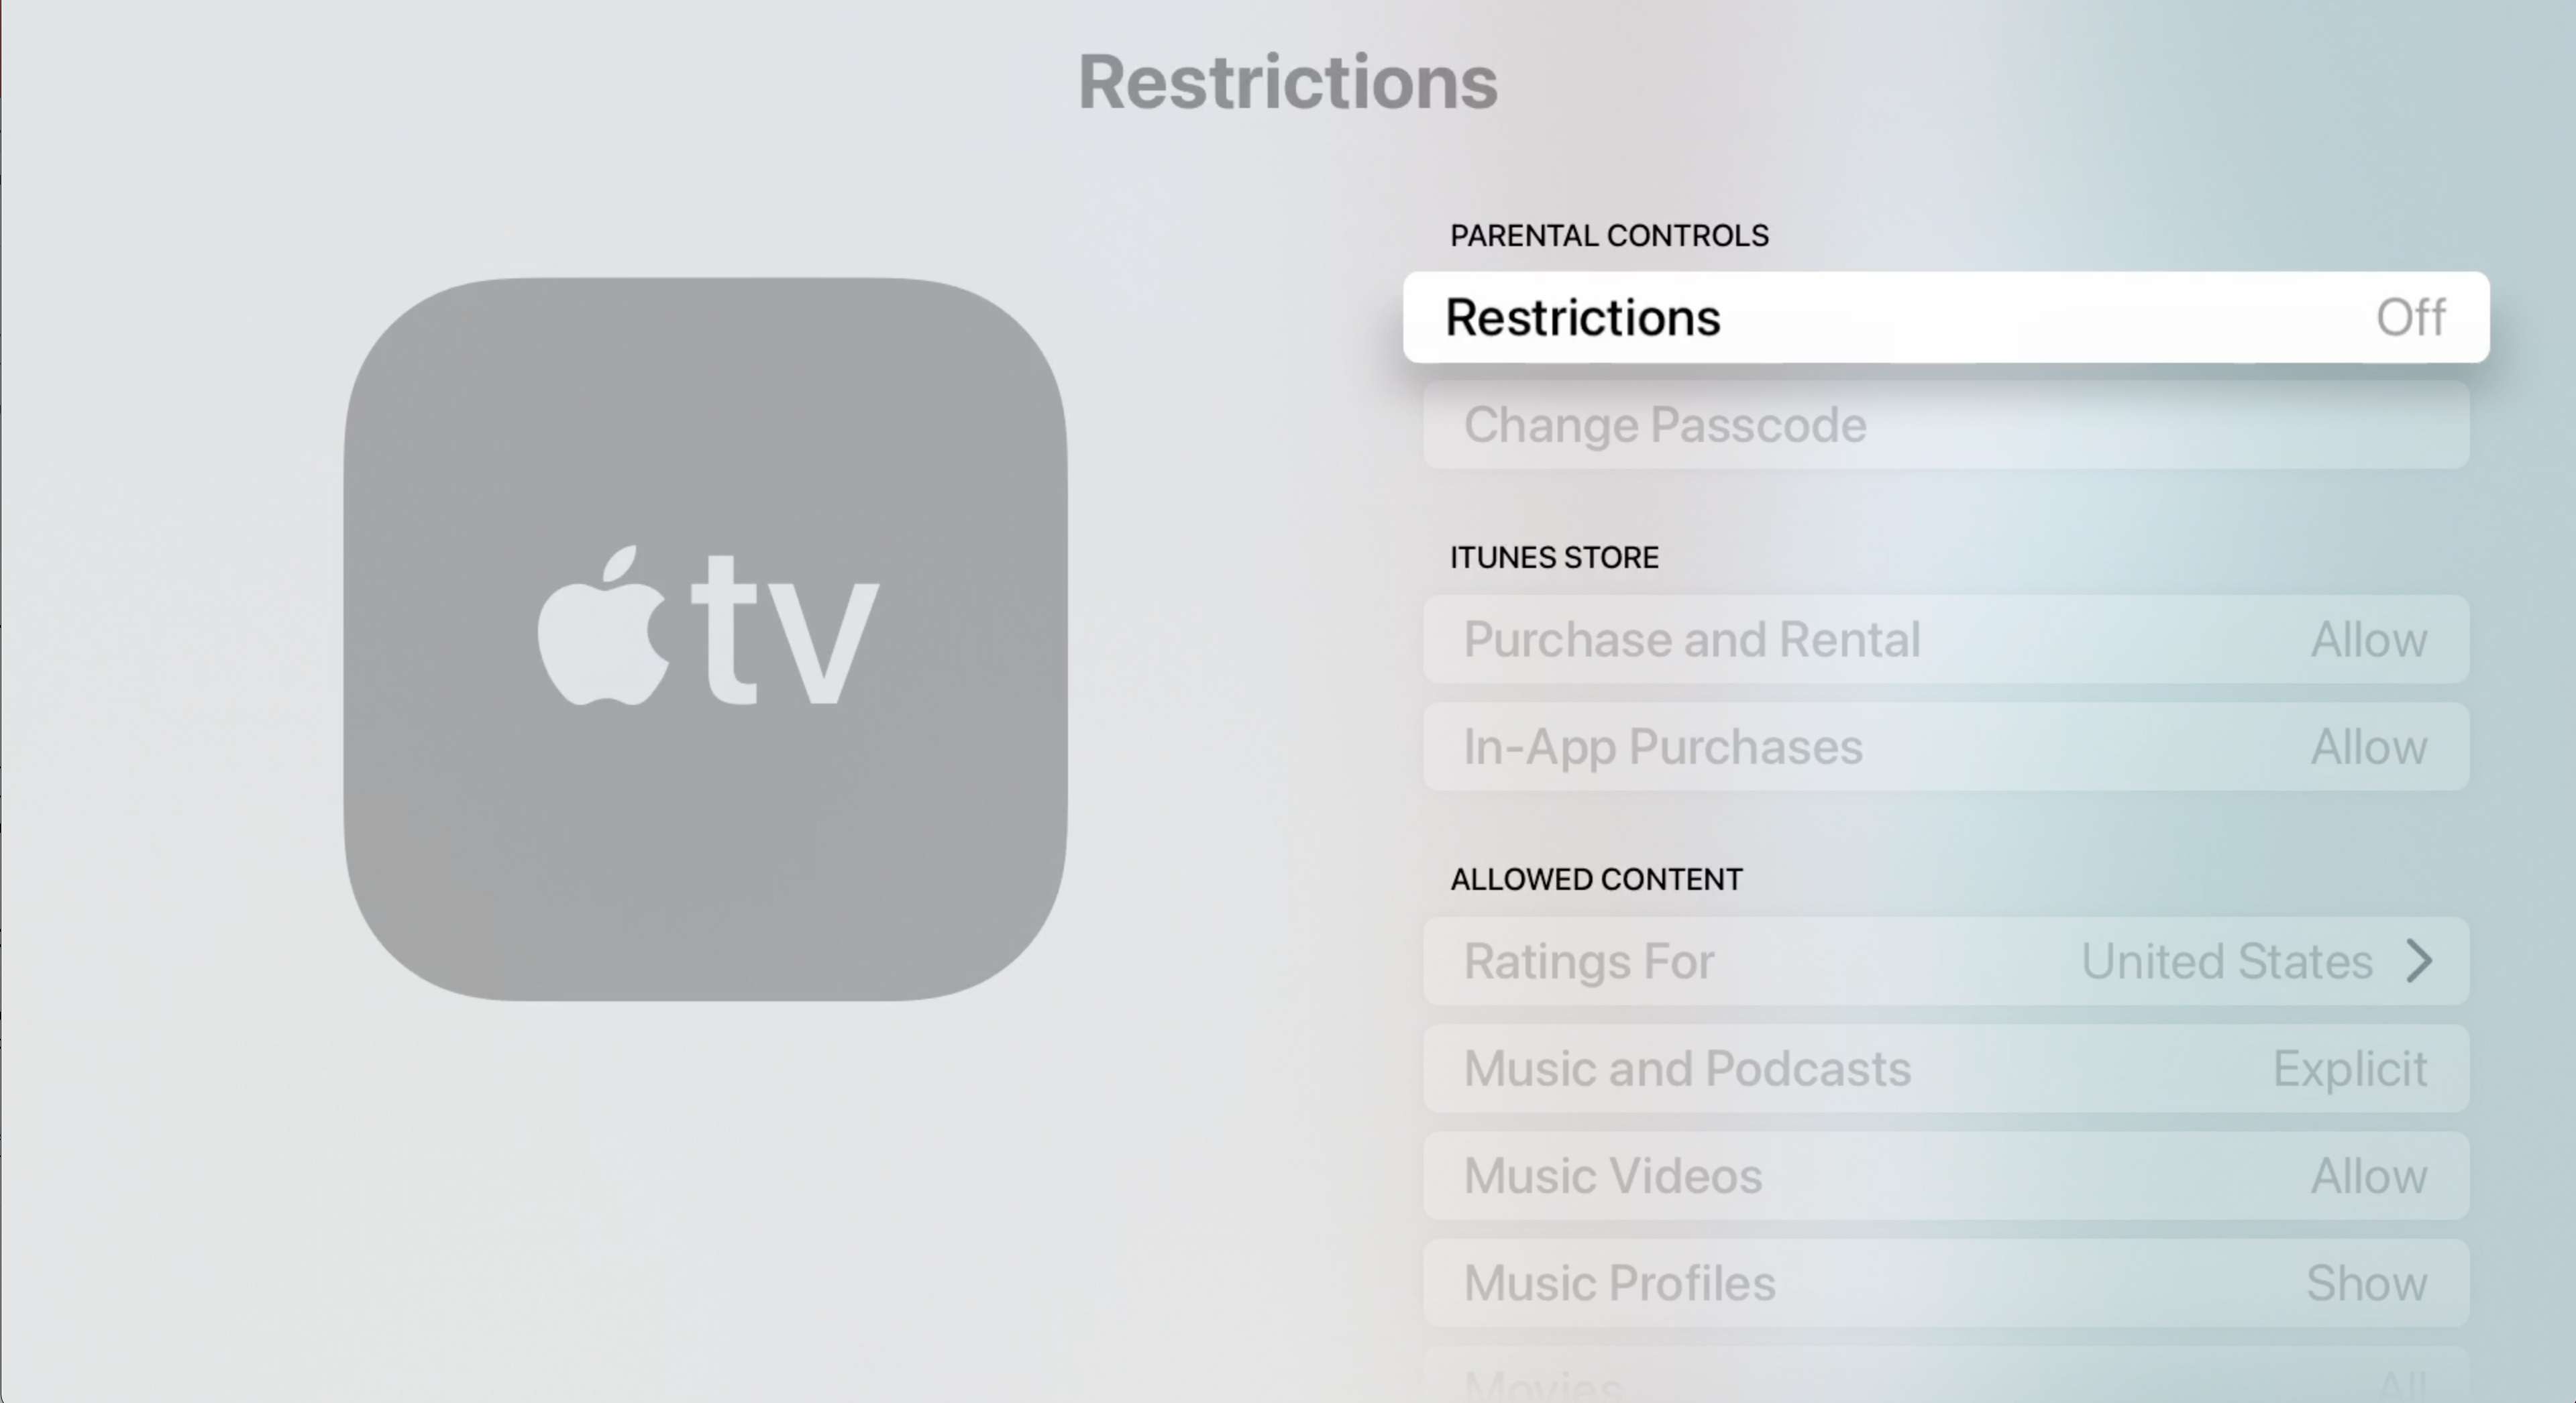 Menu de restrições da Apple TV com restrições selecionadas